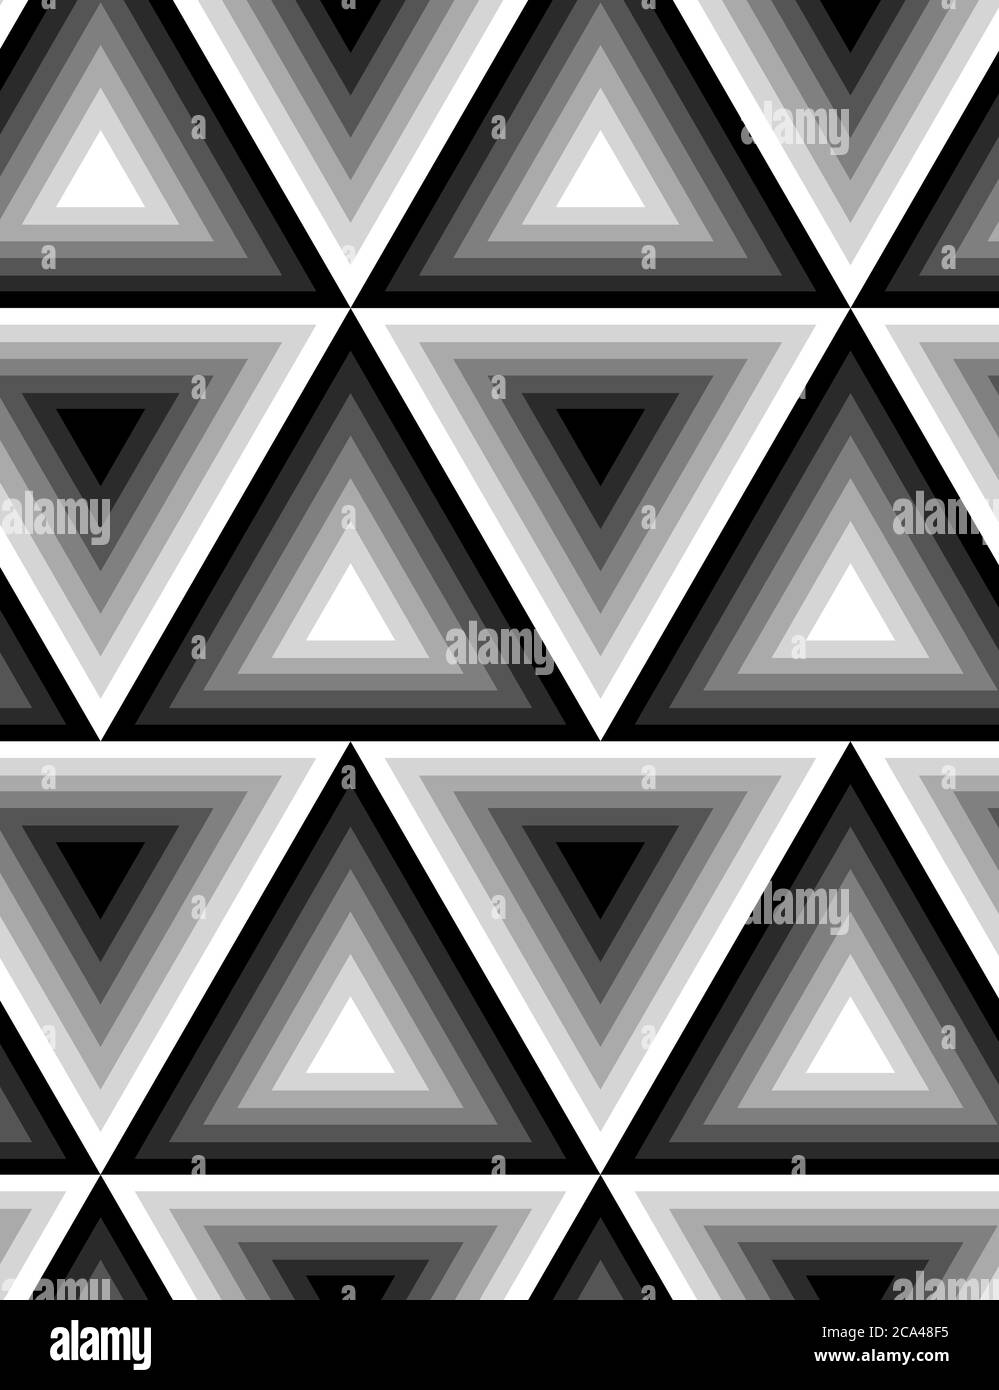 Nahtlose schwarz-weiße Textur mit Dreiecken. Vektorhintergrund für Ihr Design. Stock Vektor